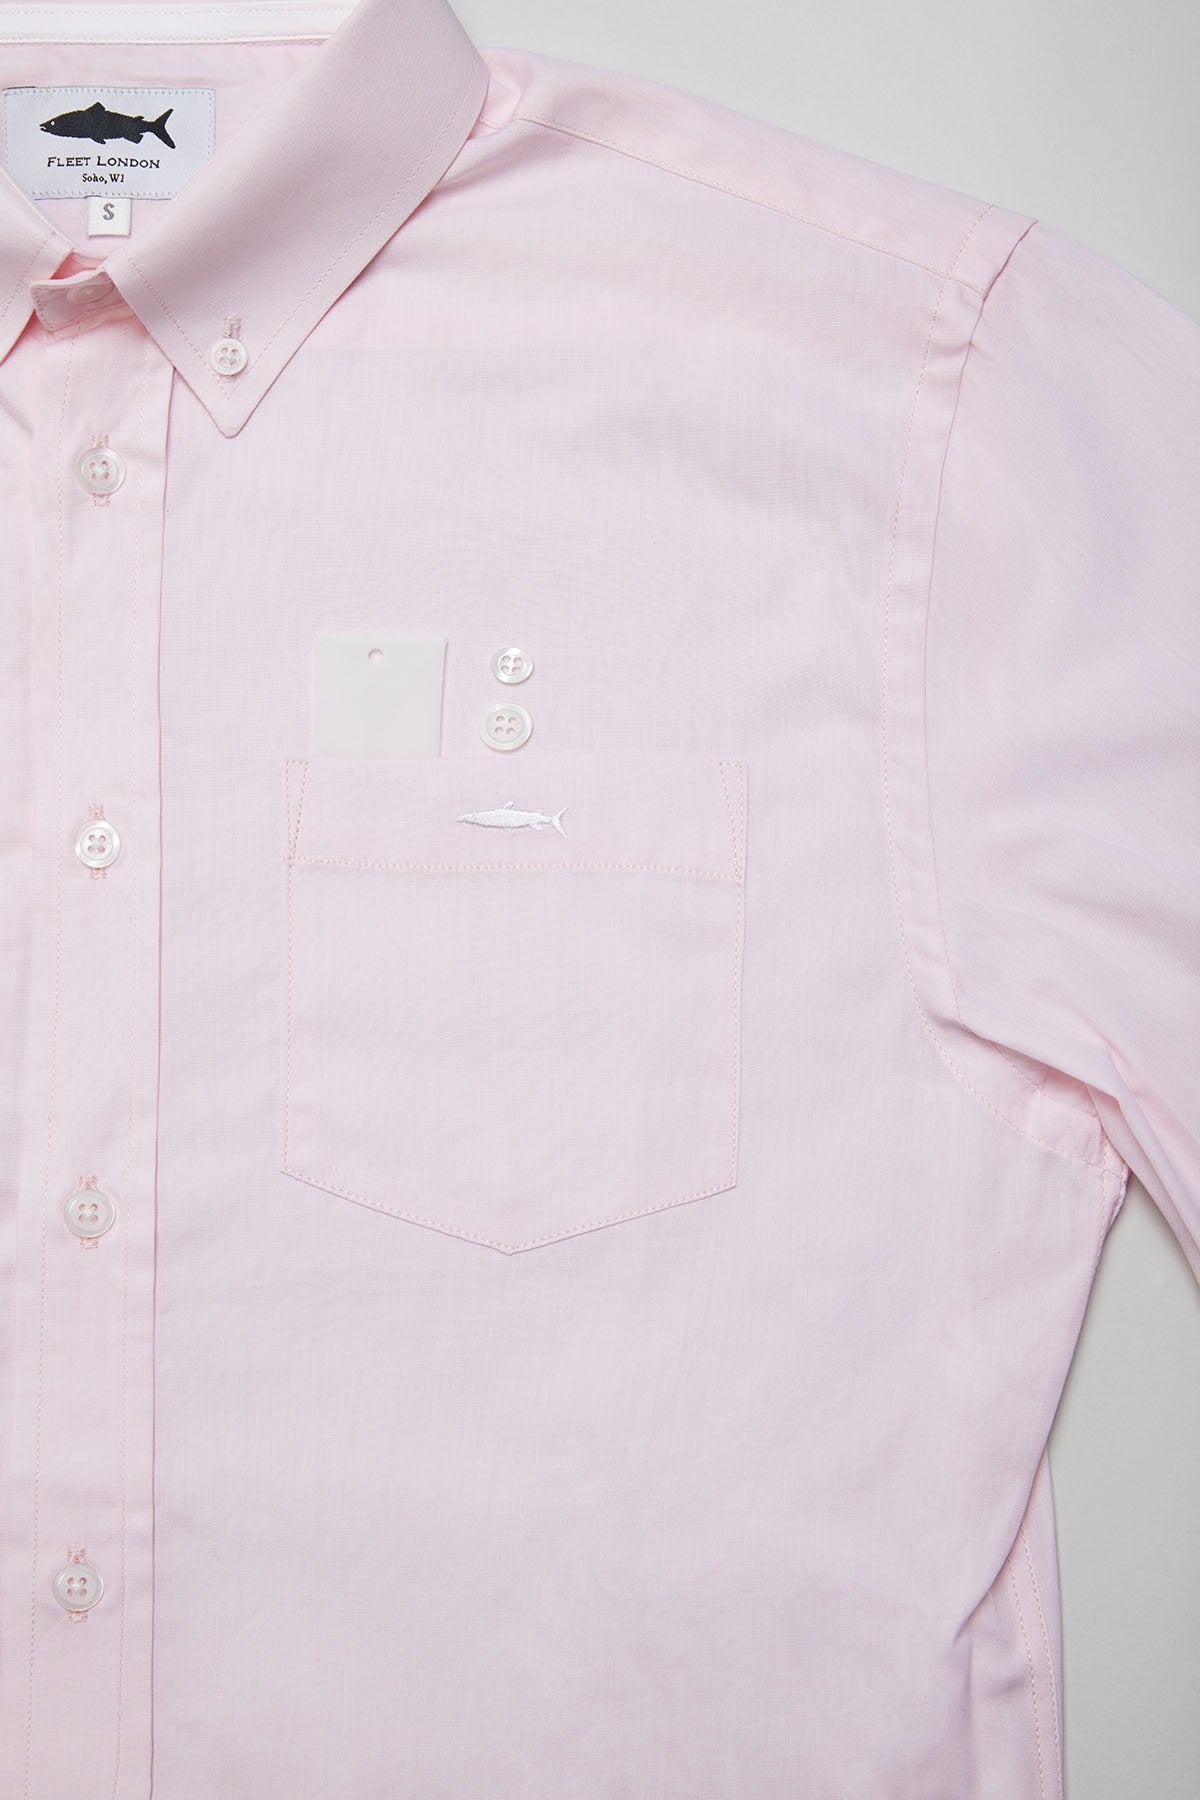 Fleet Salmon Pink Shirt